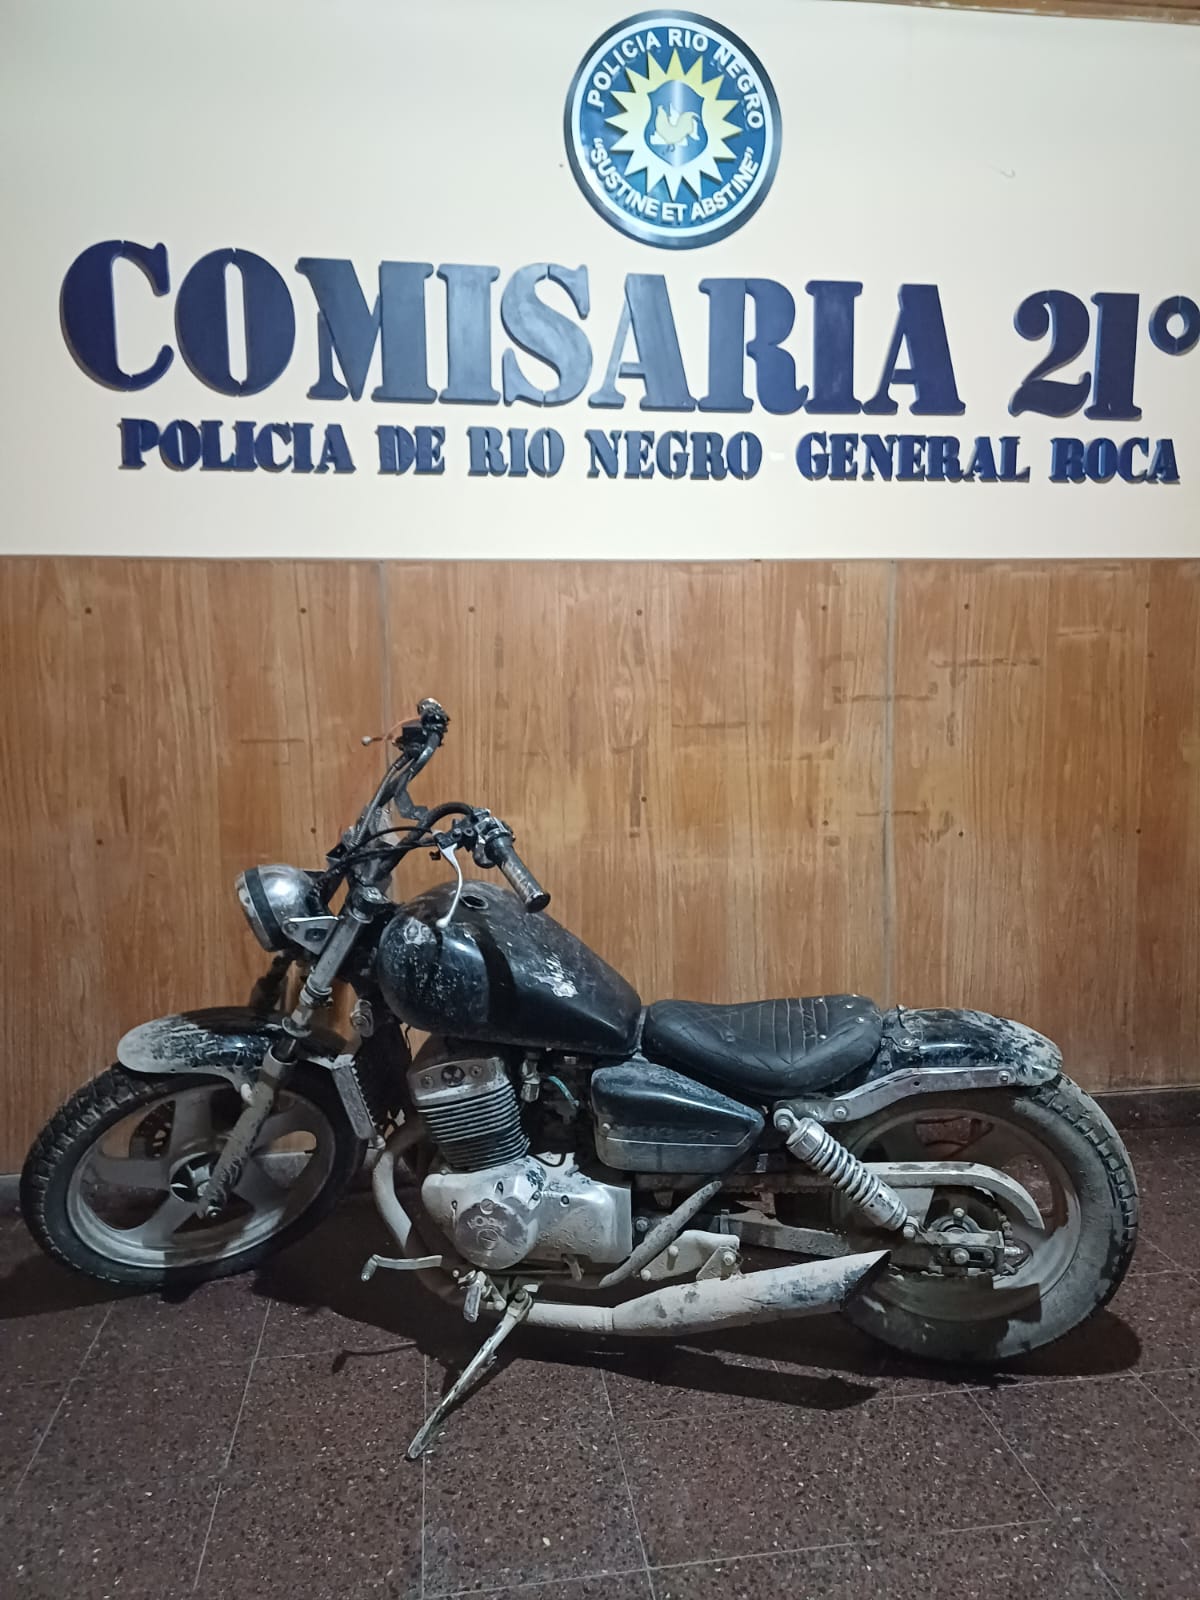 La motocicleta había sido robada el 23 de este mes. Foto: Gentileza.